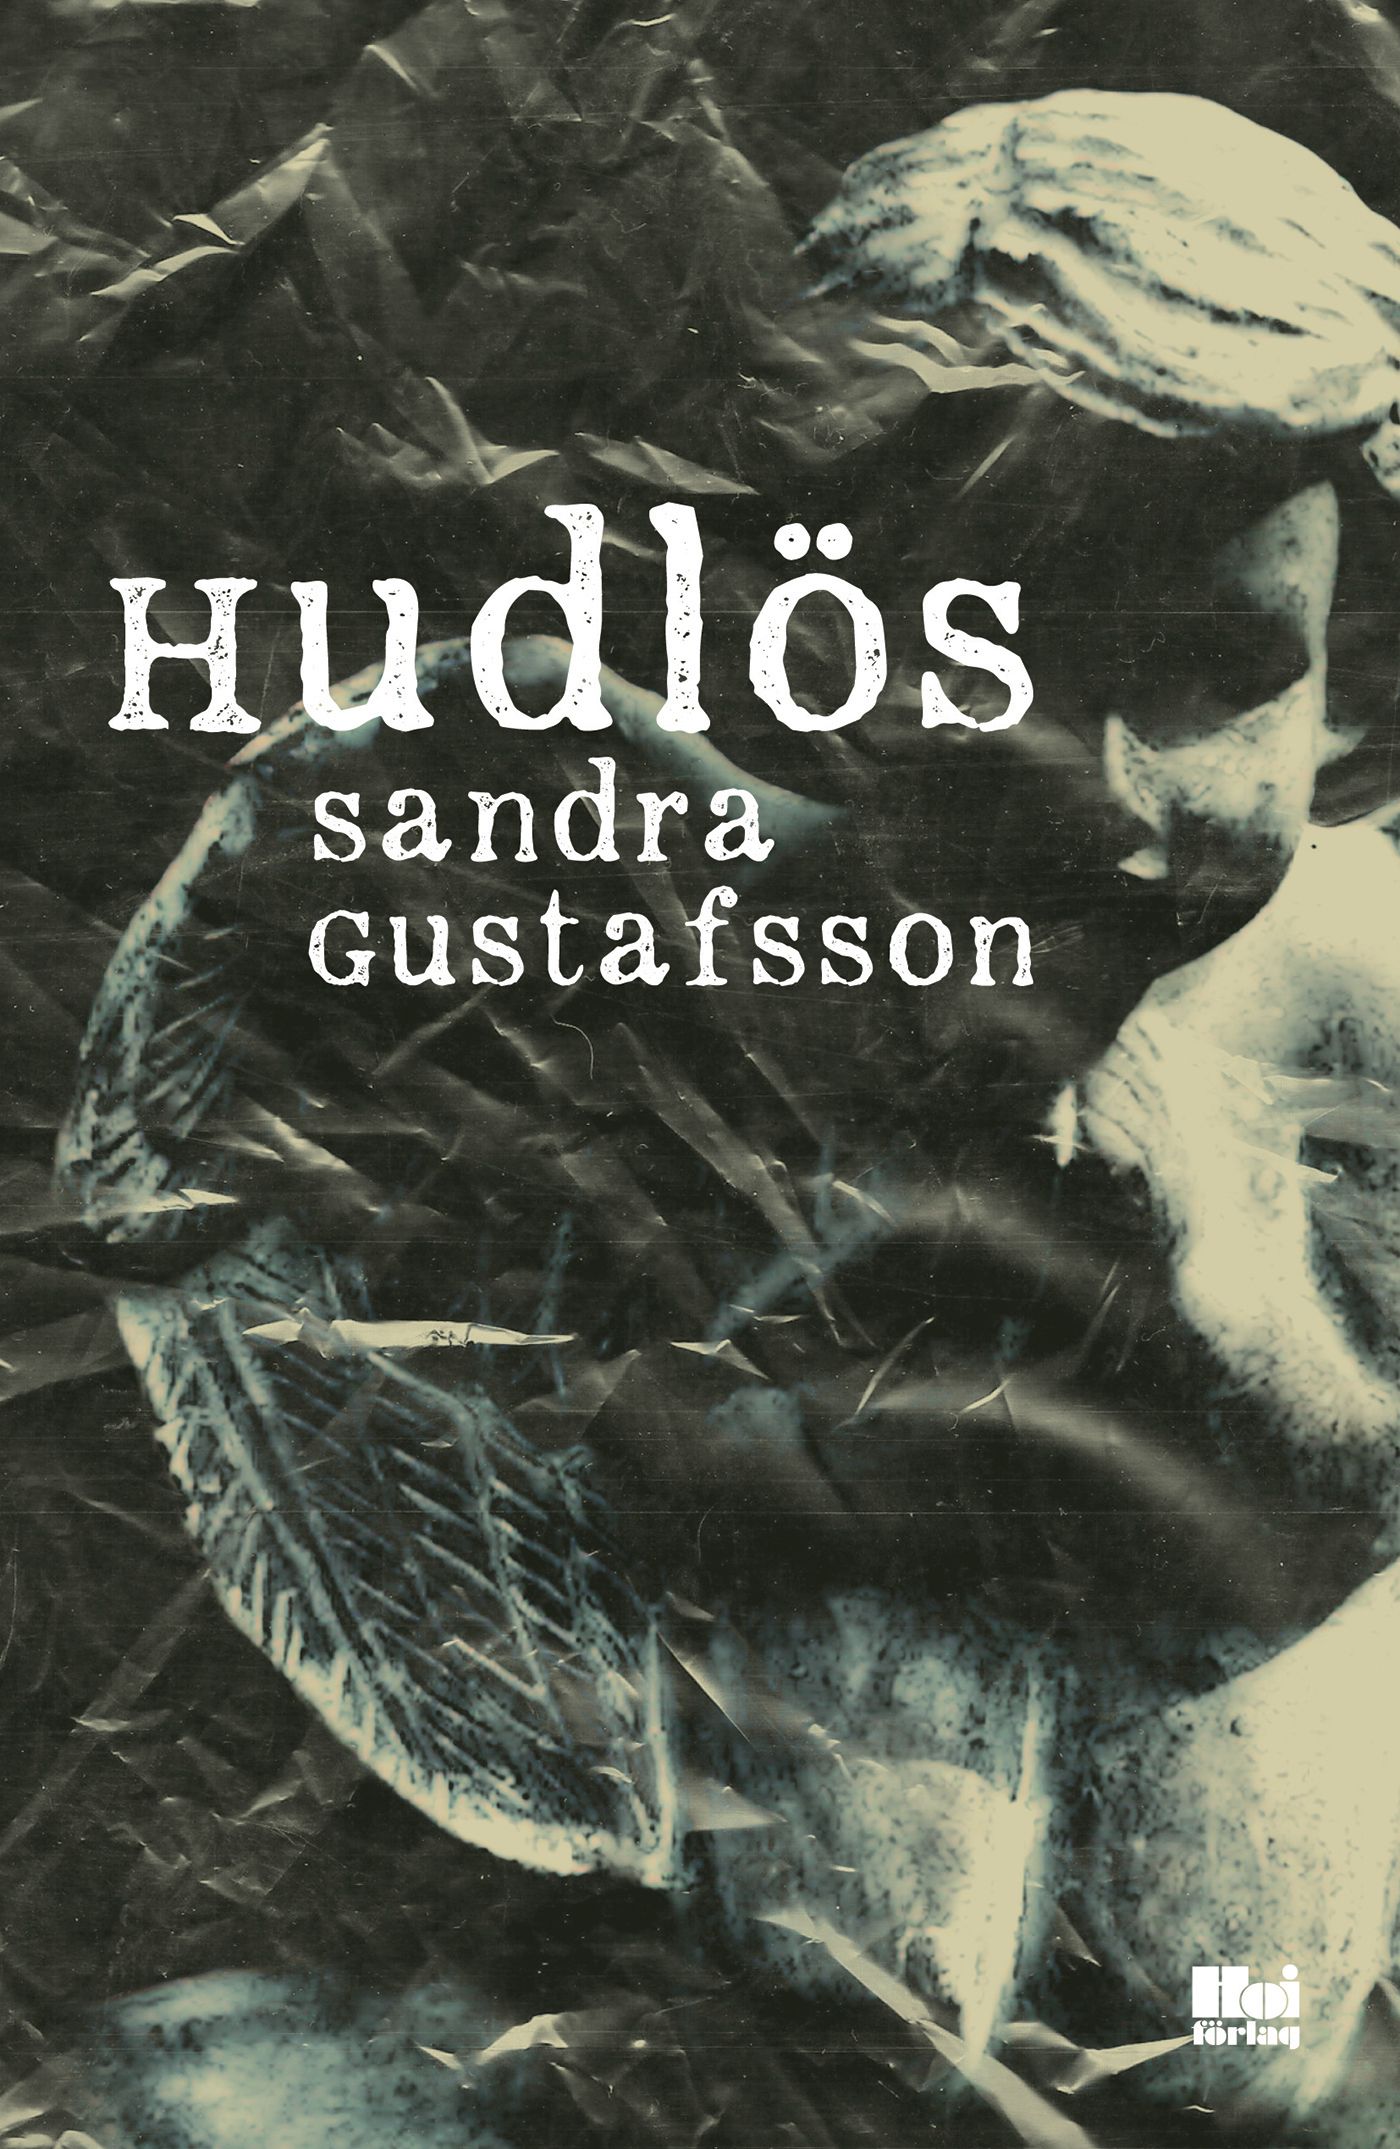 Hudlös, e-bok av Sandra Gustafsson